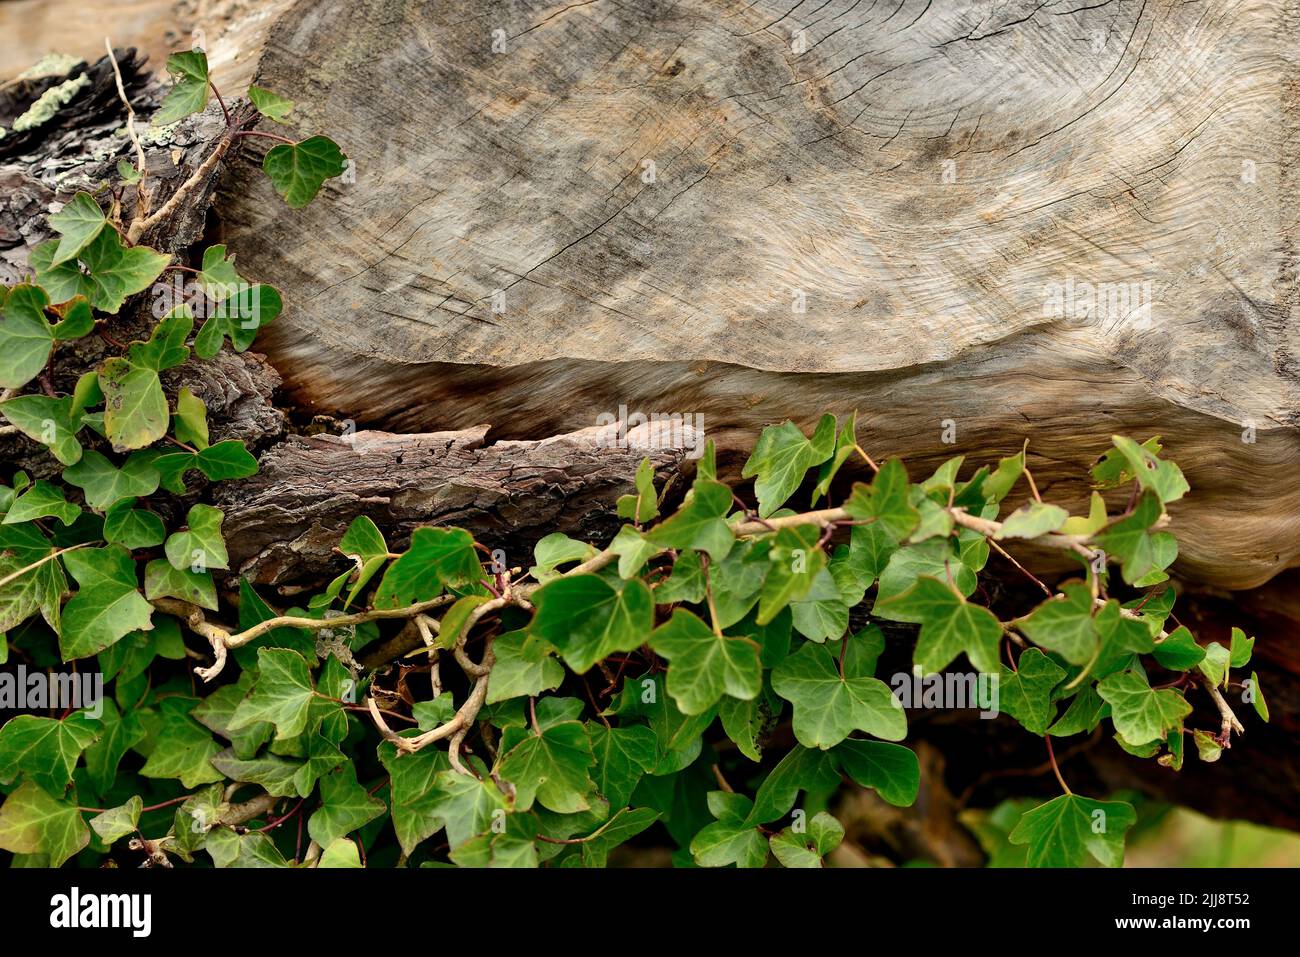 Markings on a fallen tree trunk. Stock Photo